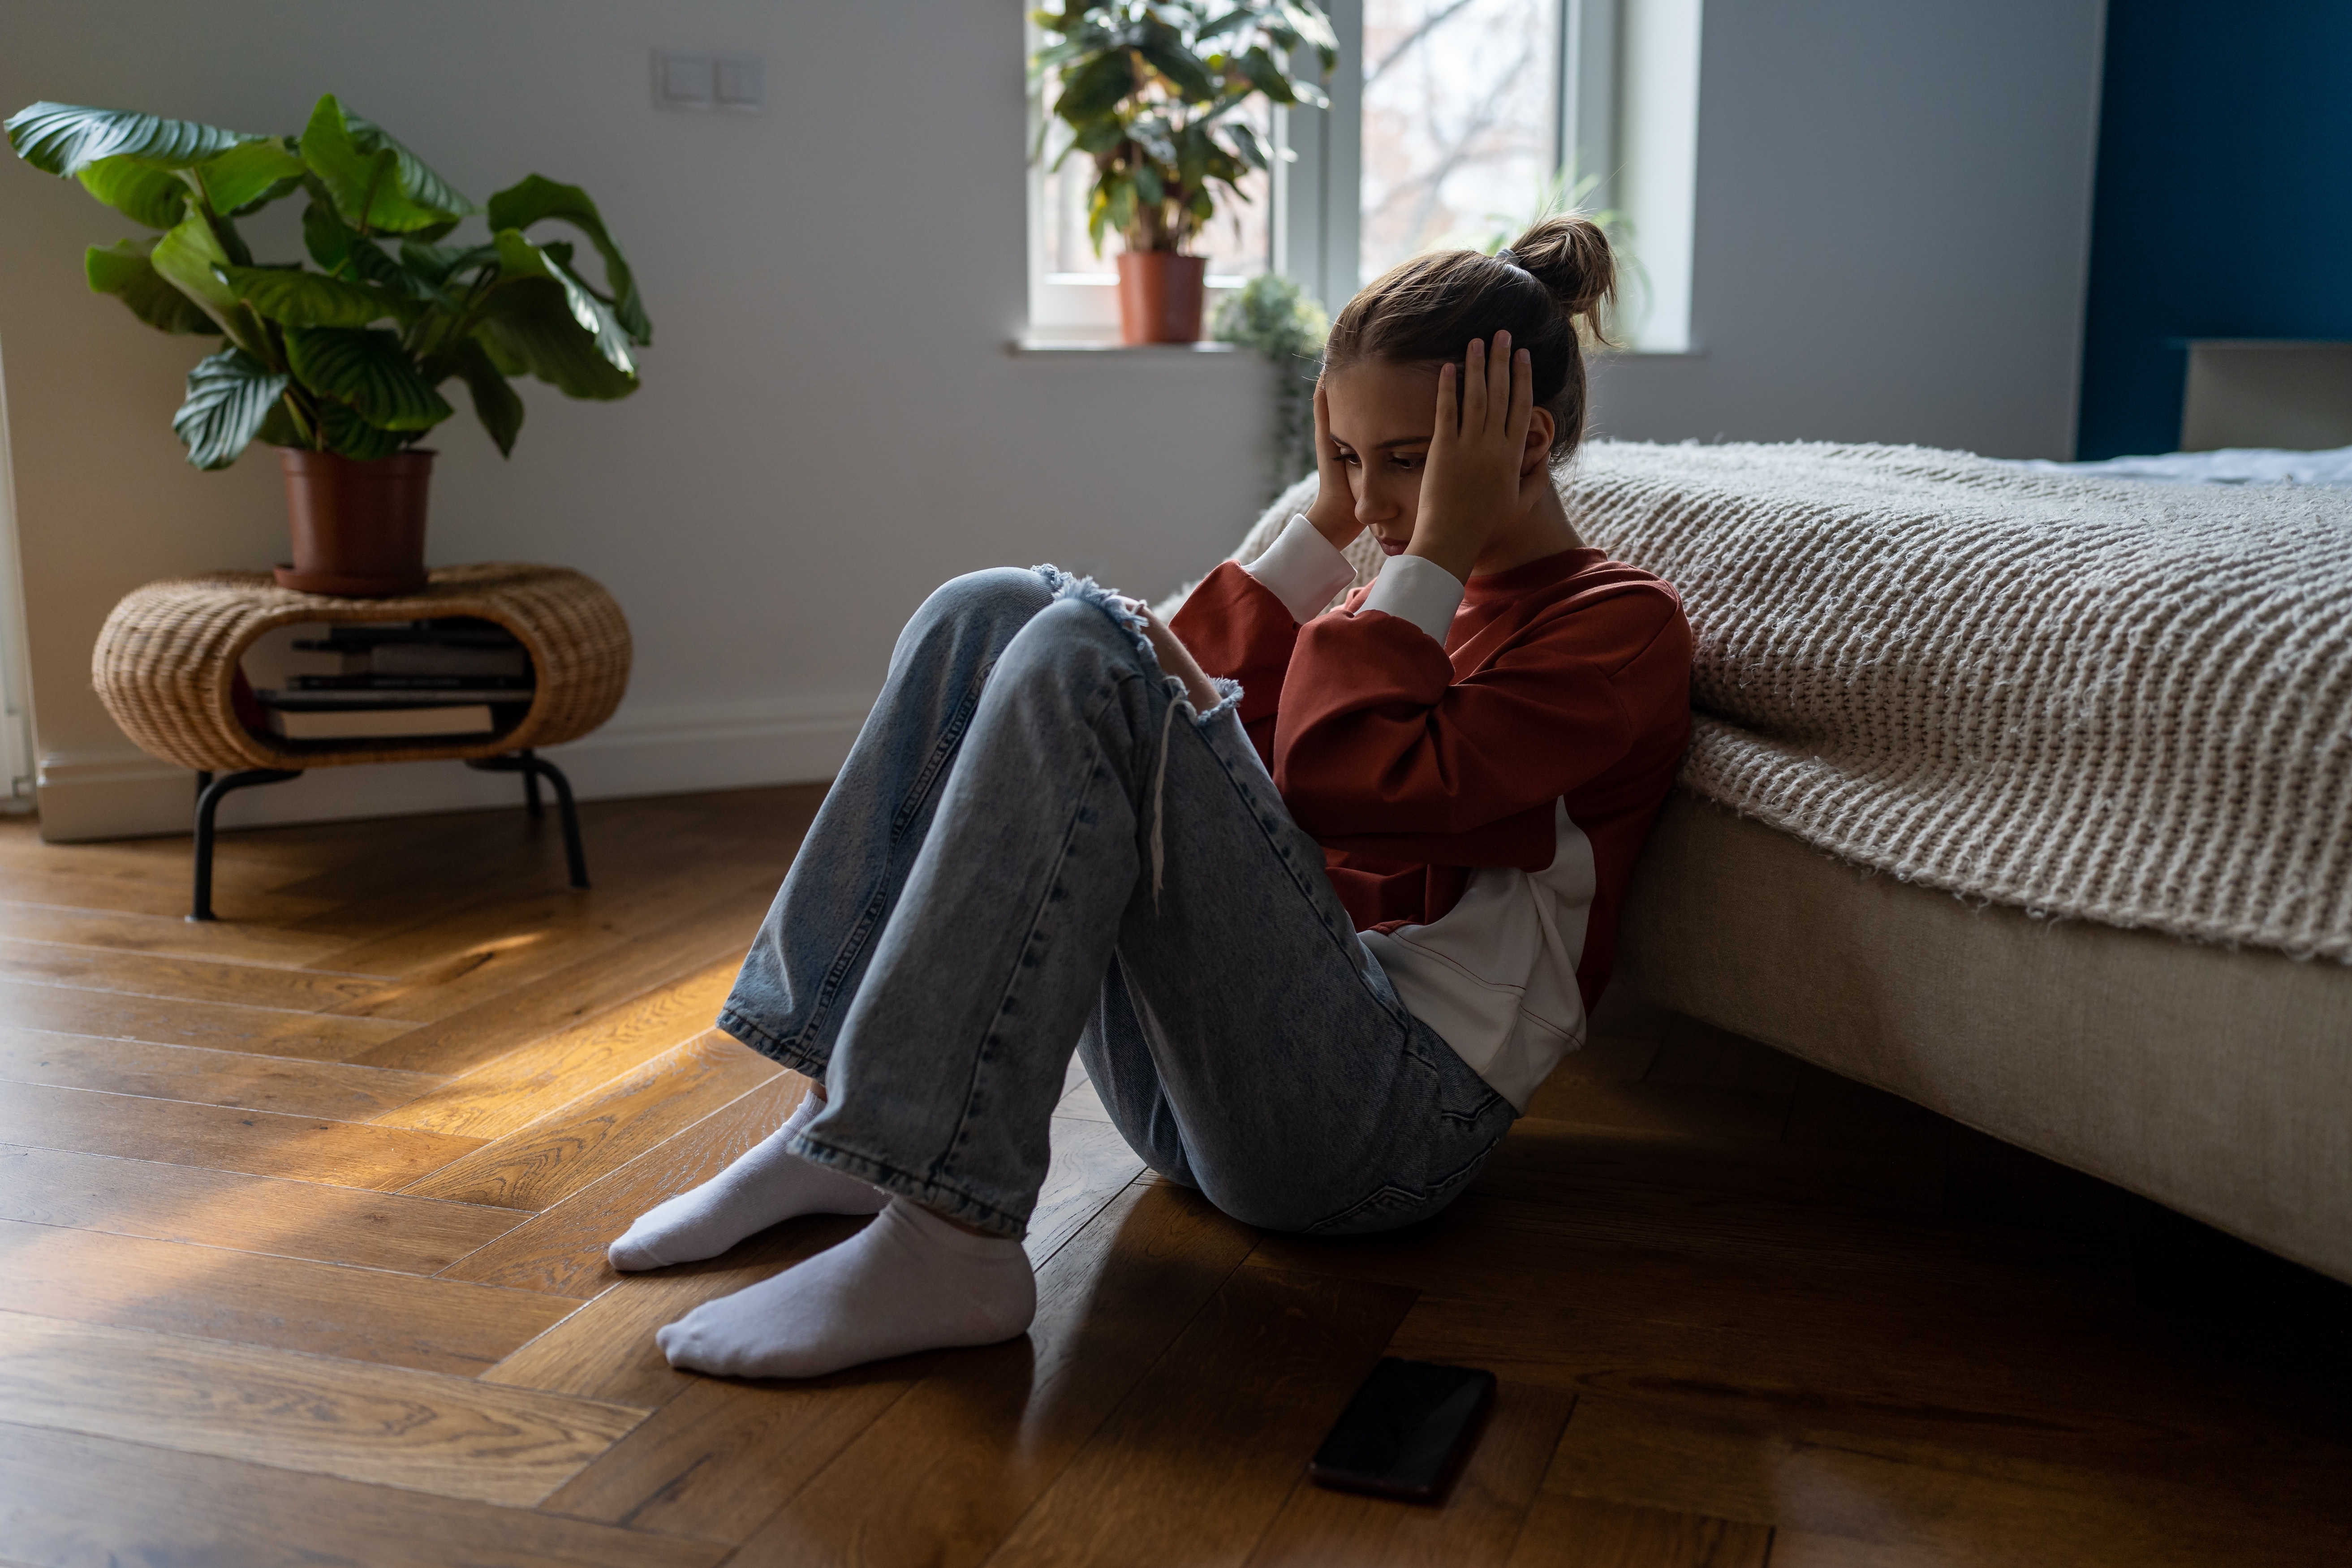 Ein frustriertes Teenager-Mädchen sitzt auf dem Boden | Quelle: Shutterstock